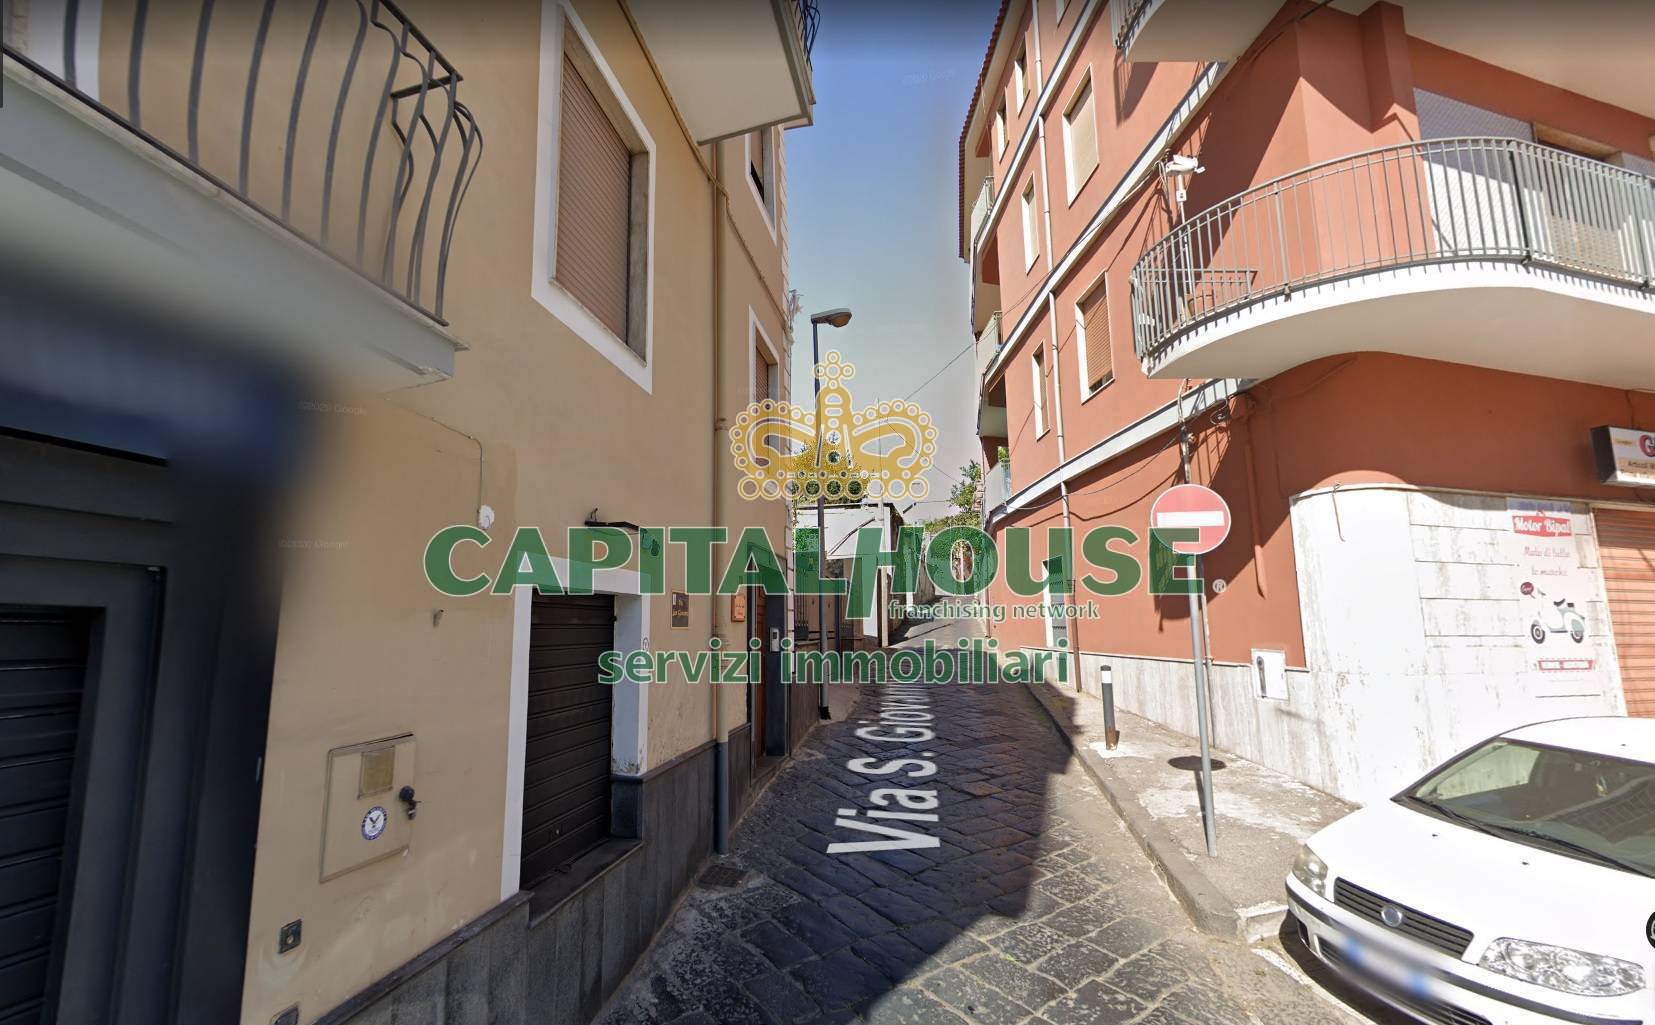 Appartamento in vendita a Ottaviano, 1 locali, prezzo € 29.000 | PortaleAgenzieImmobiliari.it